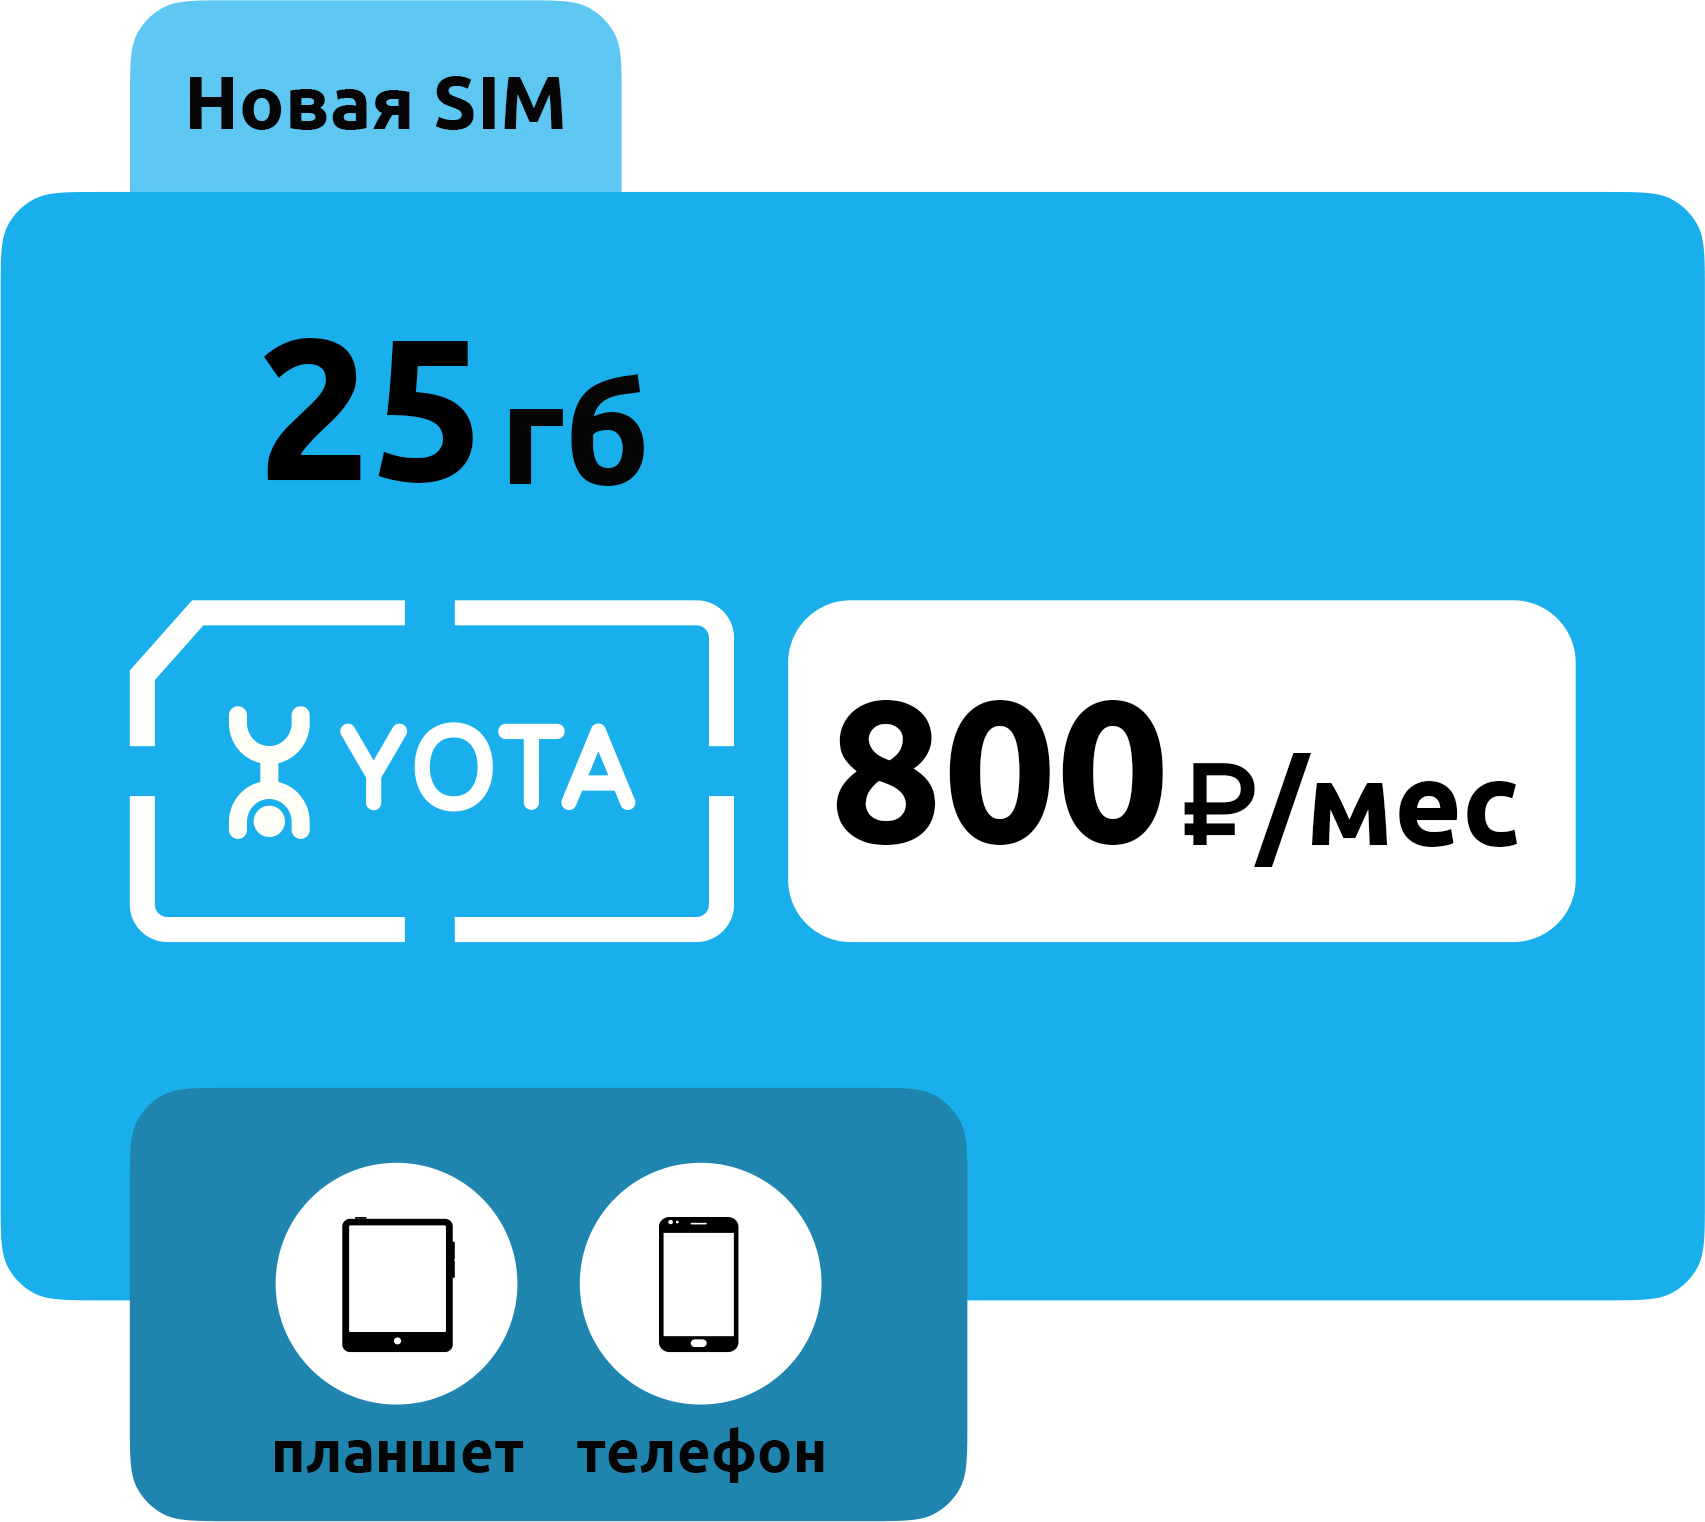 SIM-карта Yota 800